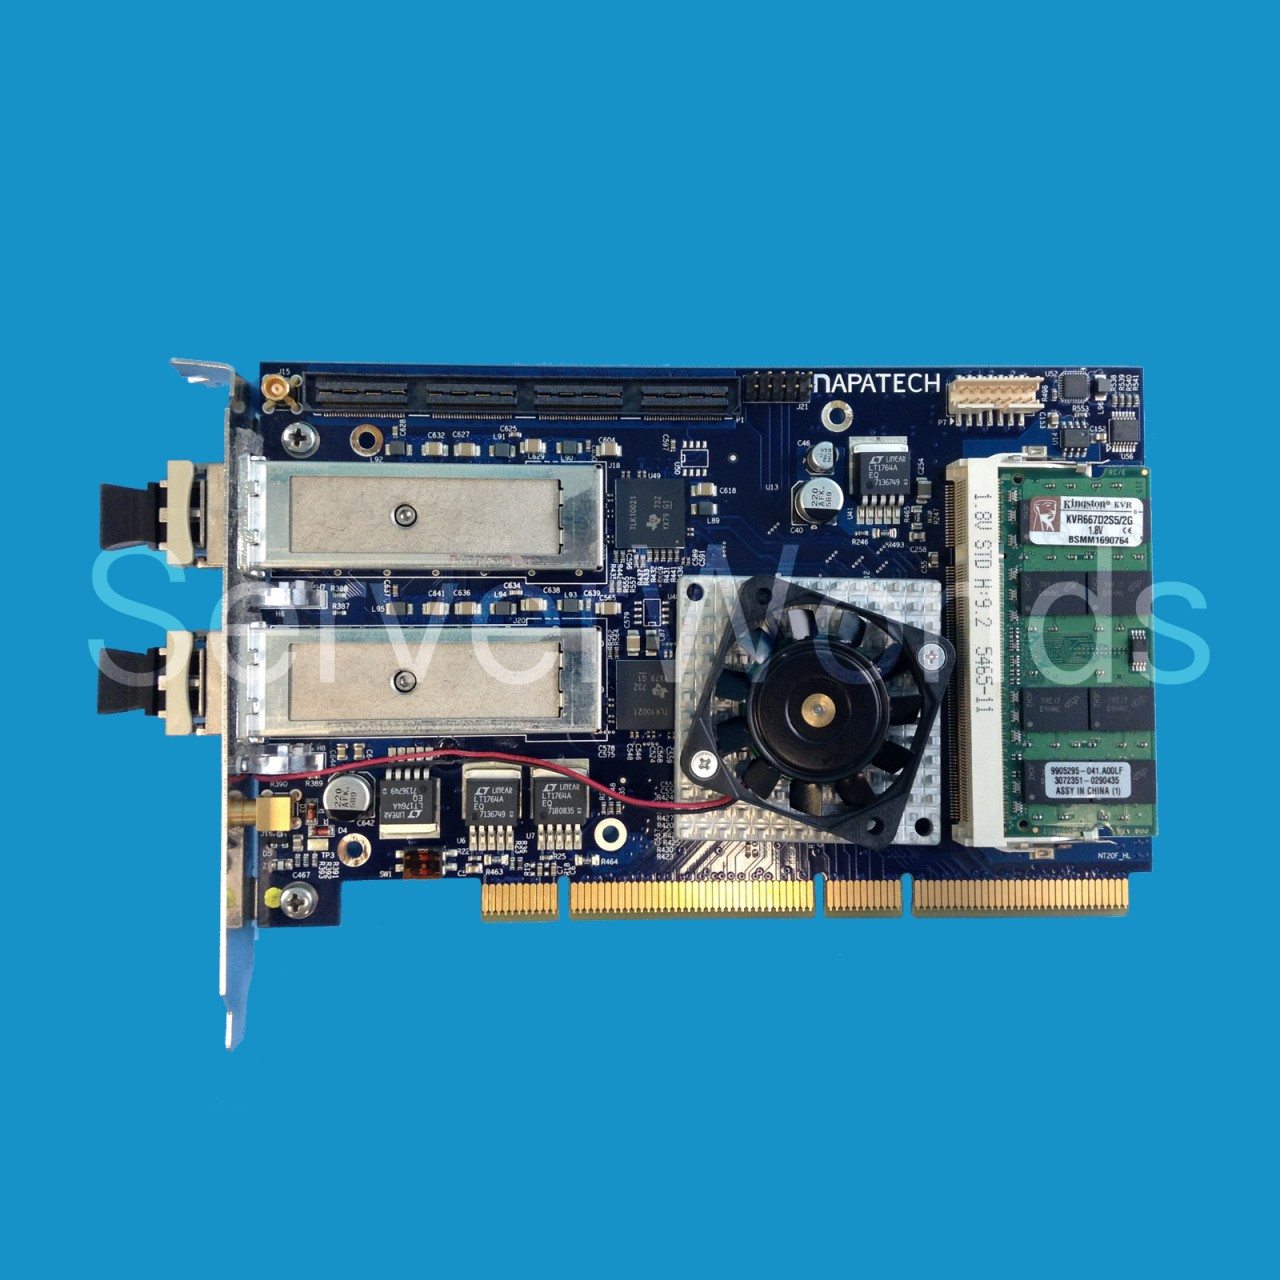 Napatech 2 x 10GB PCI-X w/XFP's HBA NT20X 810-0018-01